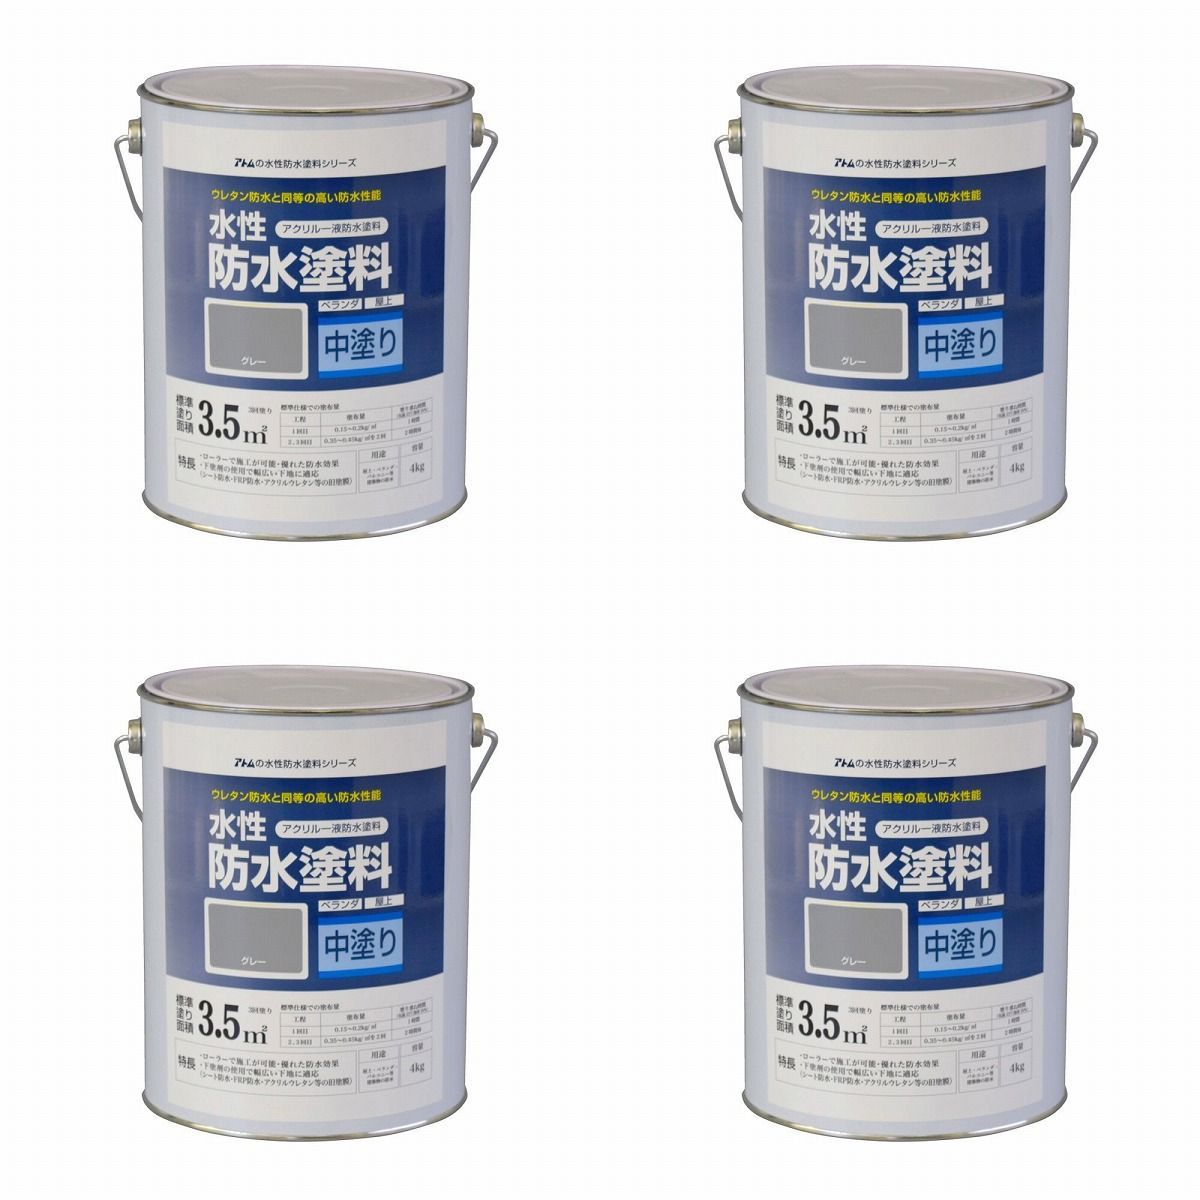 アトムハウスペイント - 水性防水塗料専用中塗り - 4kg - グレー 4缶